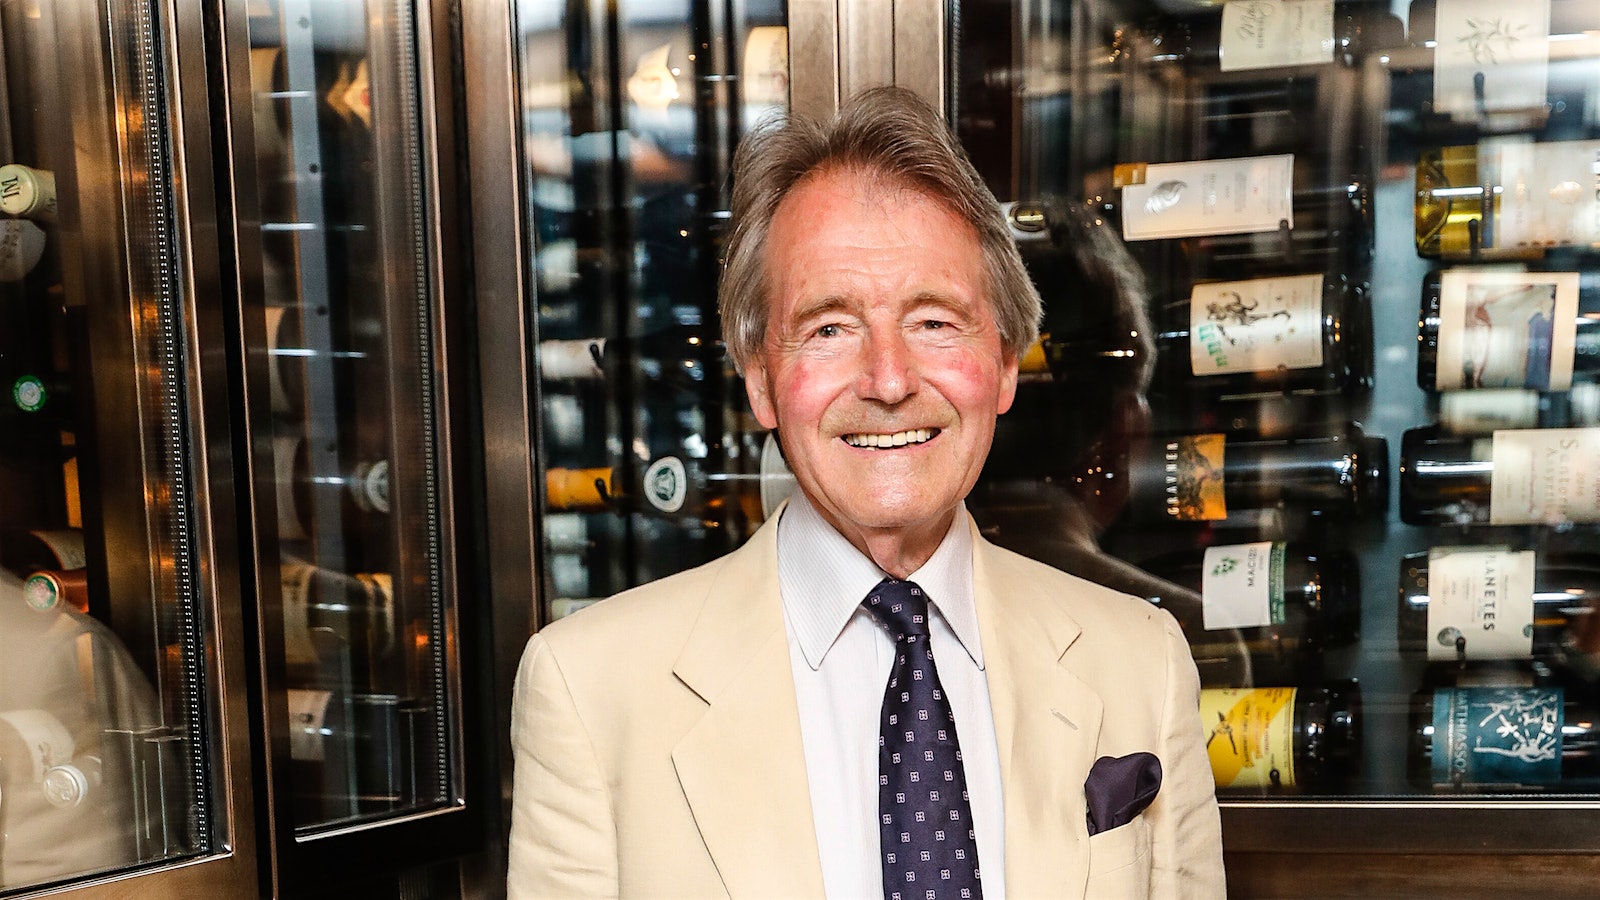     El comerciante de vinos Steven Spurrier será recordado sobre todo por organizar la Cata de París de 1976, pero también fue un profesor dedicado.